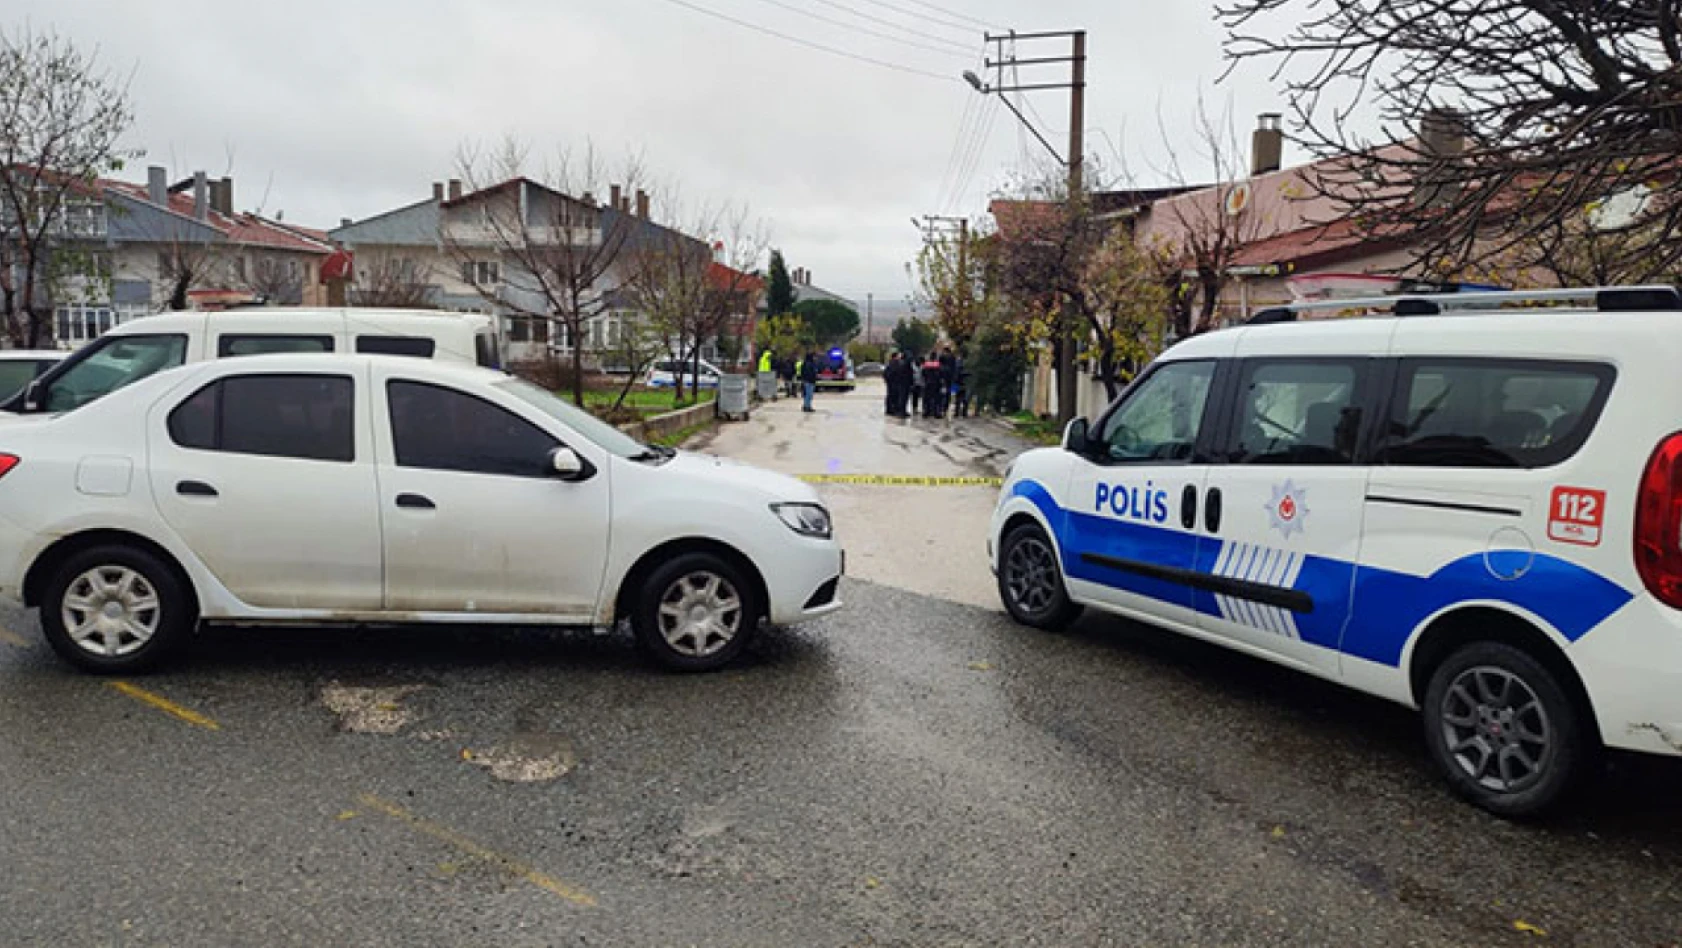 Edirne'de arkadaşlar arasında çıkan silahlı kavgada 1 kişi öldü, 1 kişi yaralandı